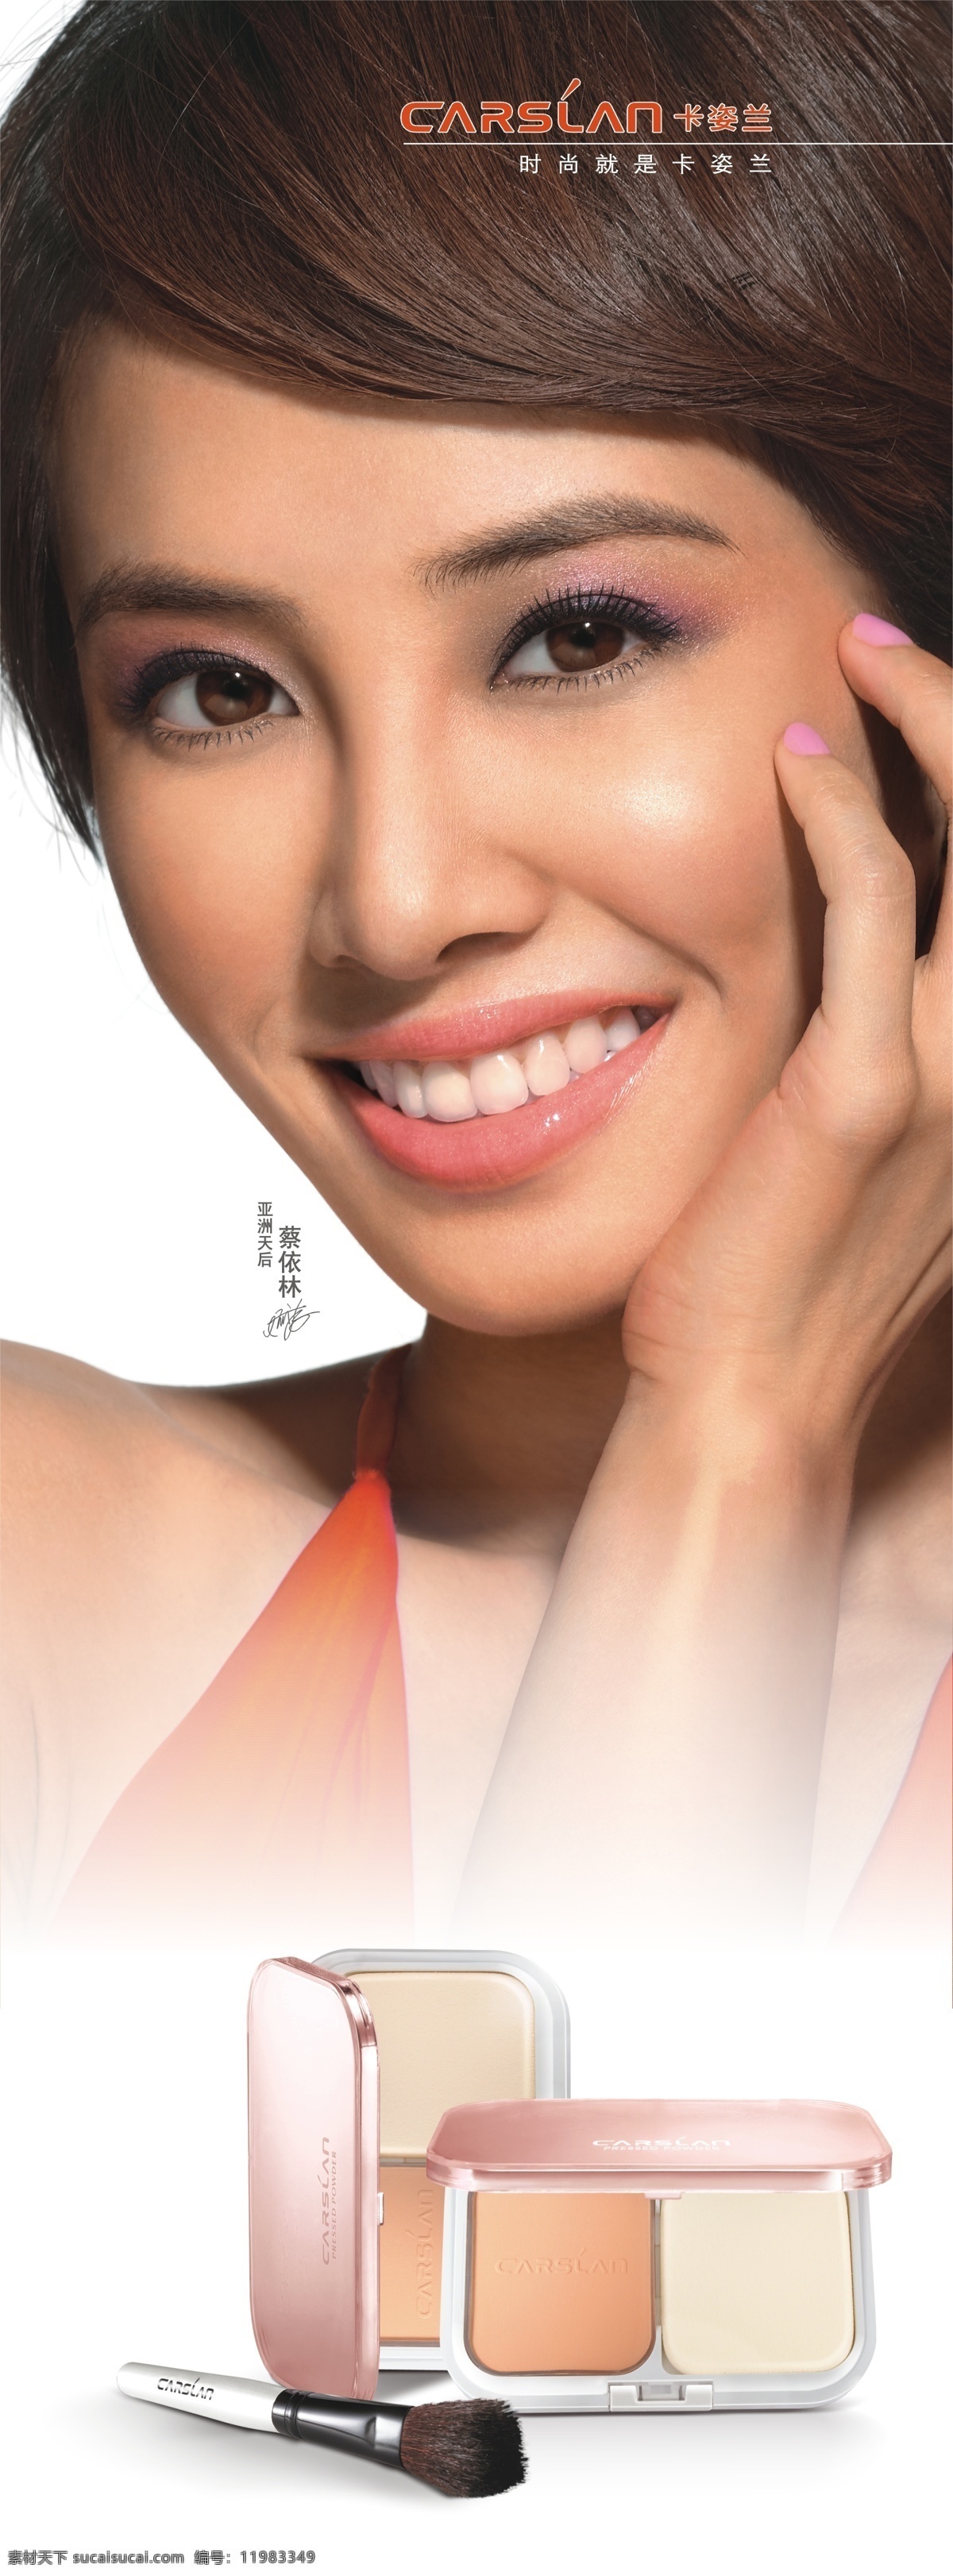 卡姿兰 卡姿兰宣传 蔡依林 粉饼 护肤 美容 美女 海报 卡姿兰化妆品 设计图库